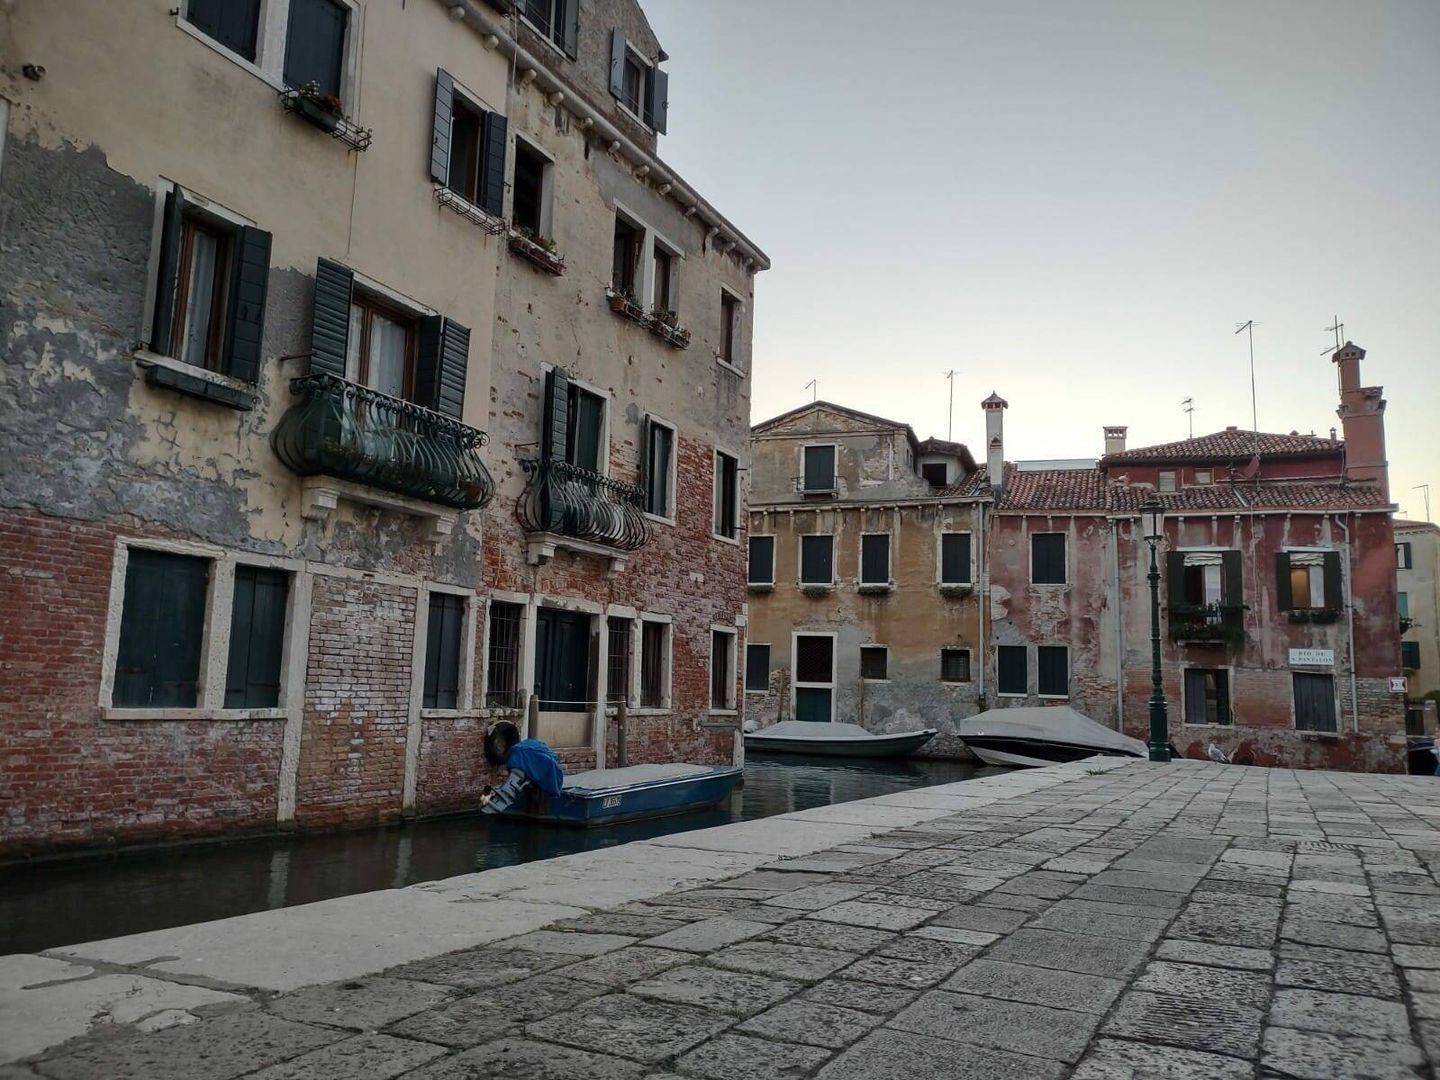 Canal detrás de la Scuola Grande di San Rocco, en Venecia (Marta Valdivieso)